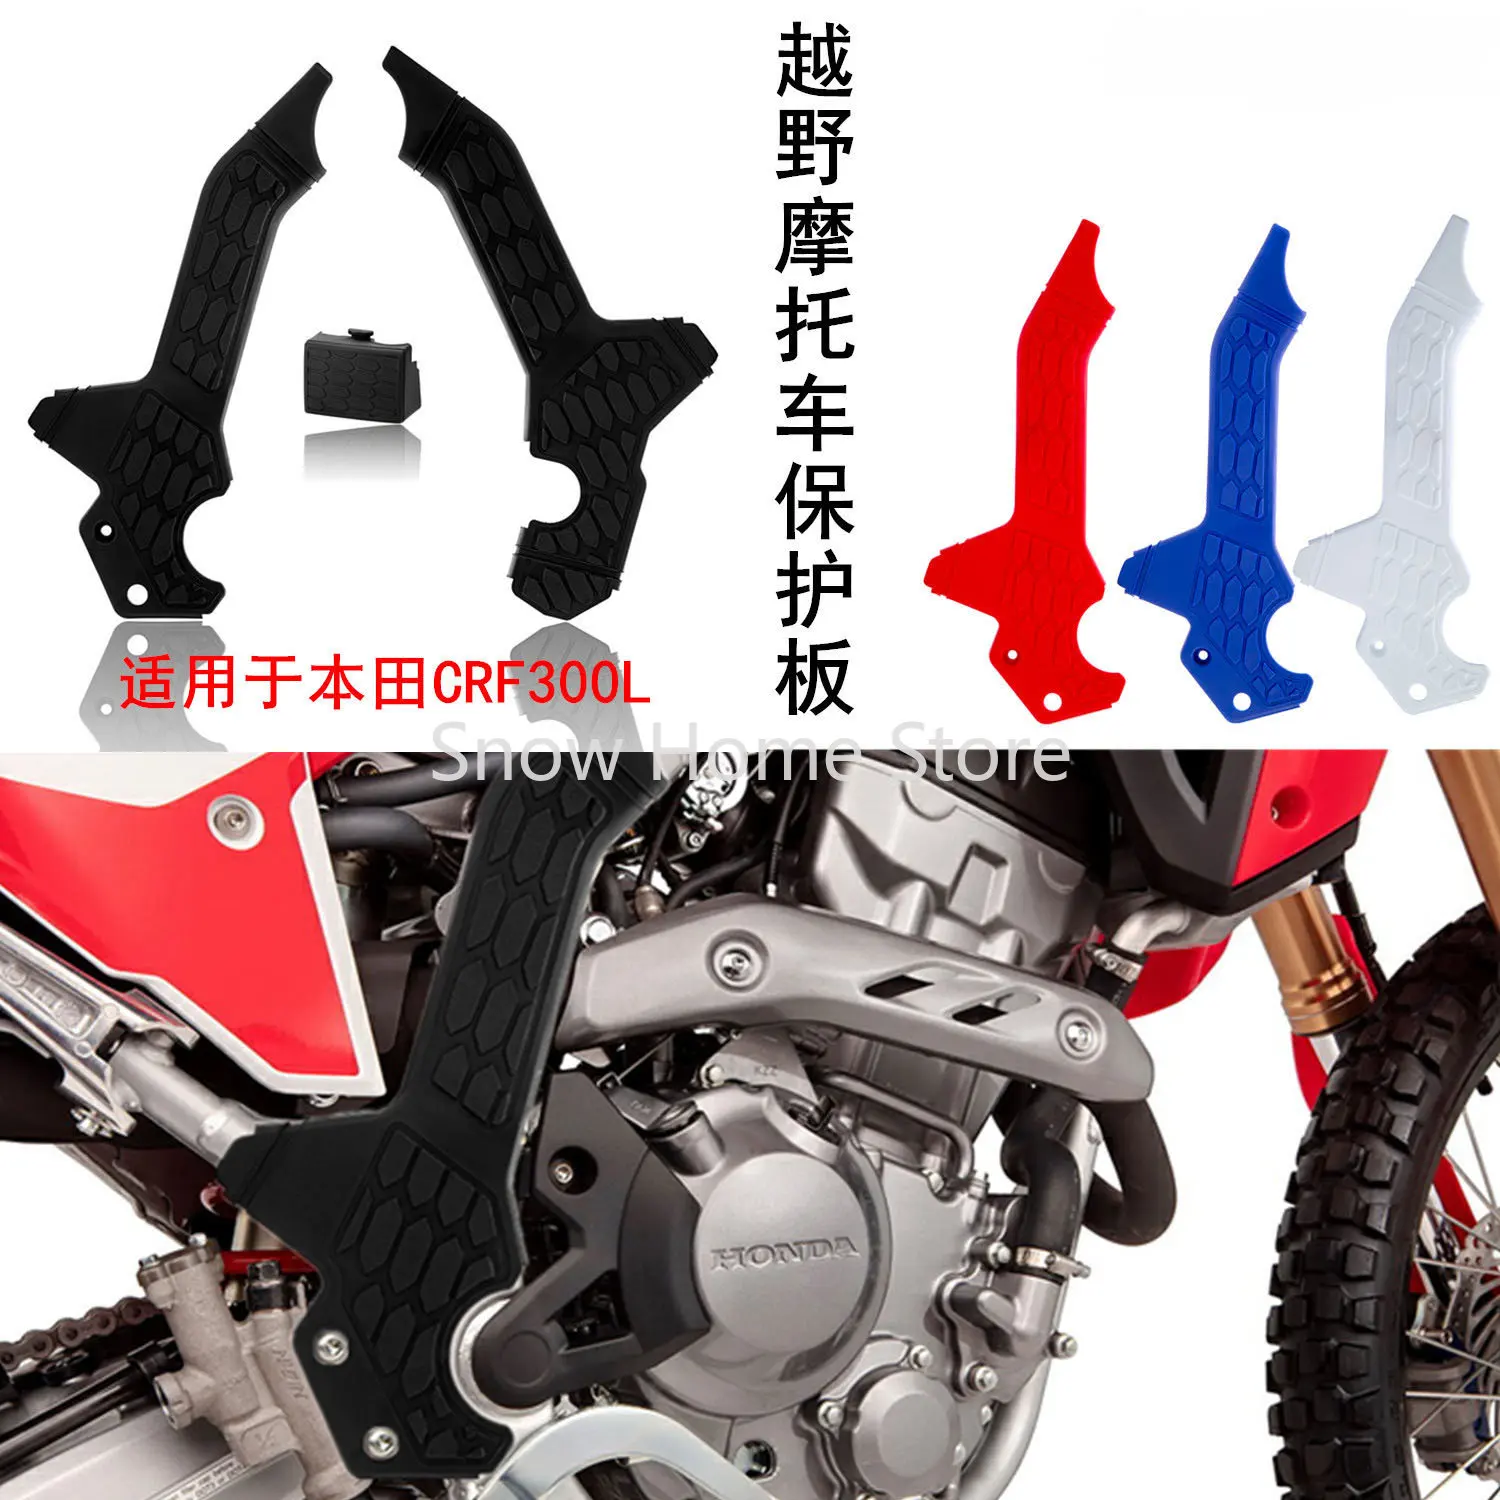 Модифицированные аксессуары для внедорожных мотоциклов, подходящие для Honda CRF300L, Специальная защитная пластина на раме от царапин